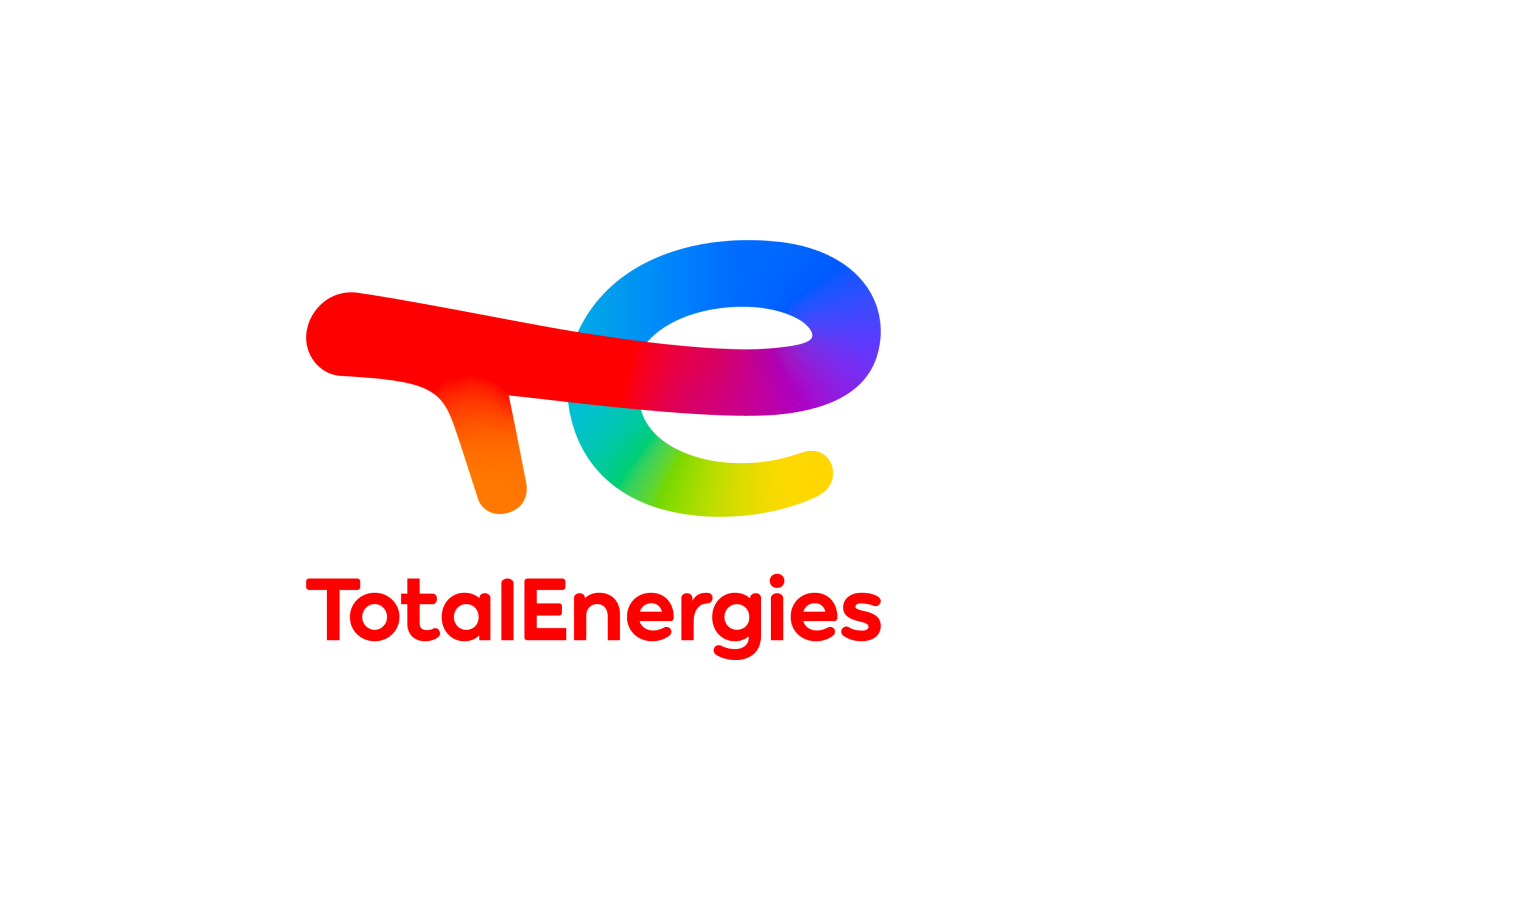 Descubra más sobre TotalEnergies en nuestra página exclusiva.